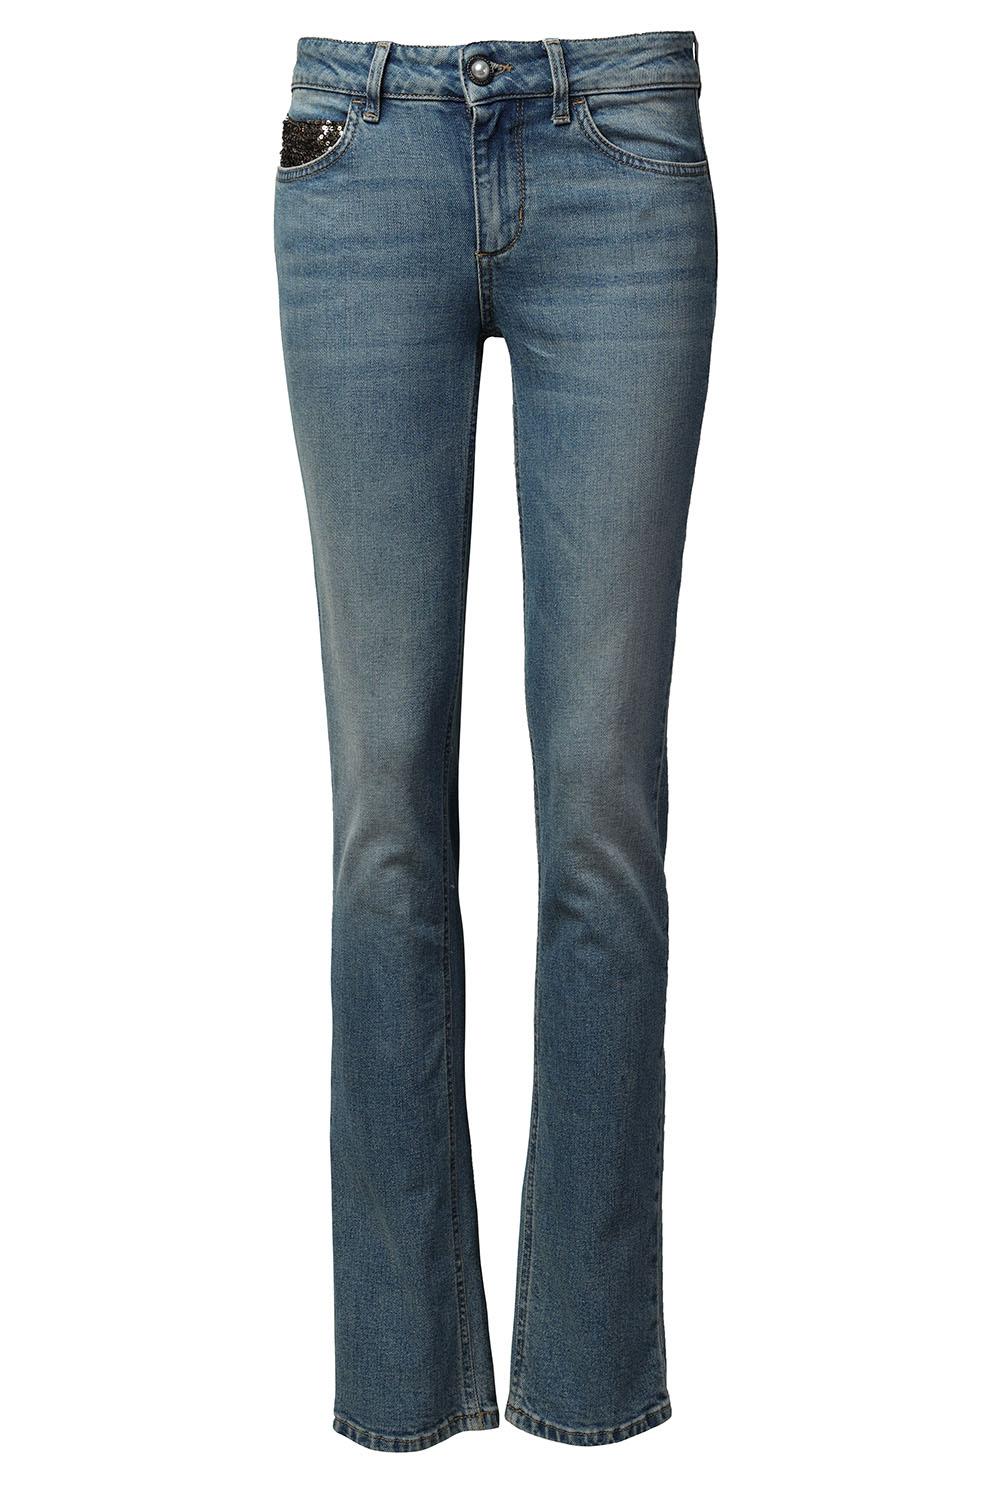 Liu Jo Skinny jeans L32 Claudia blauw